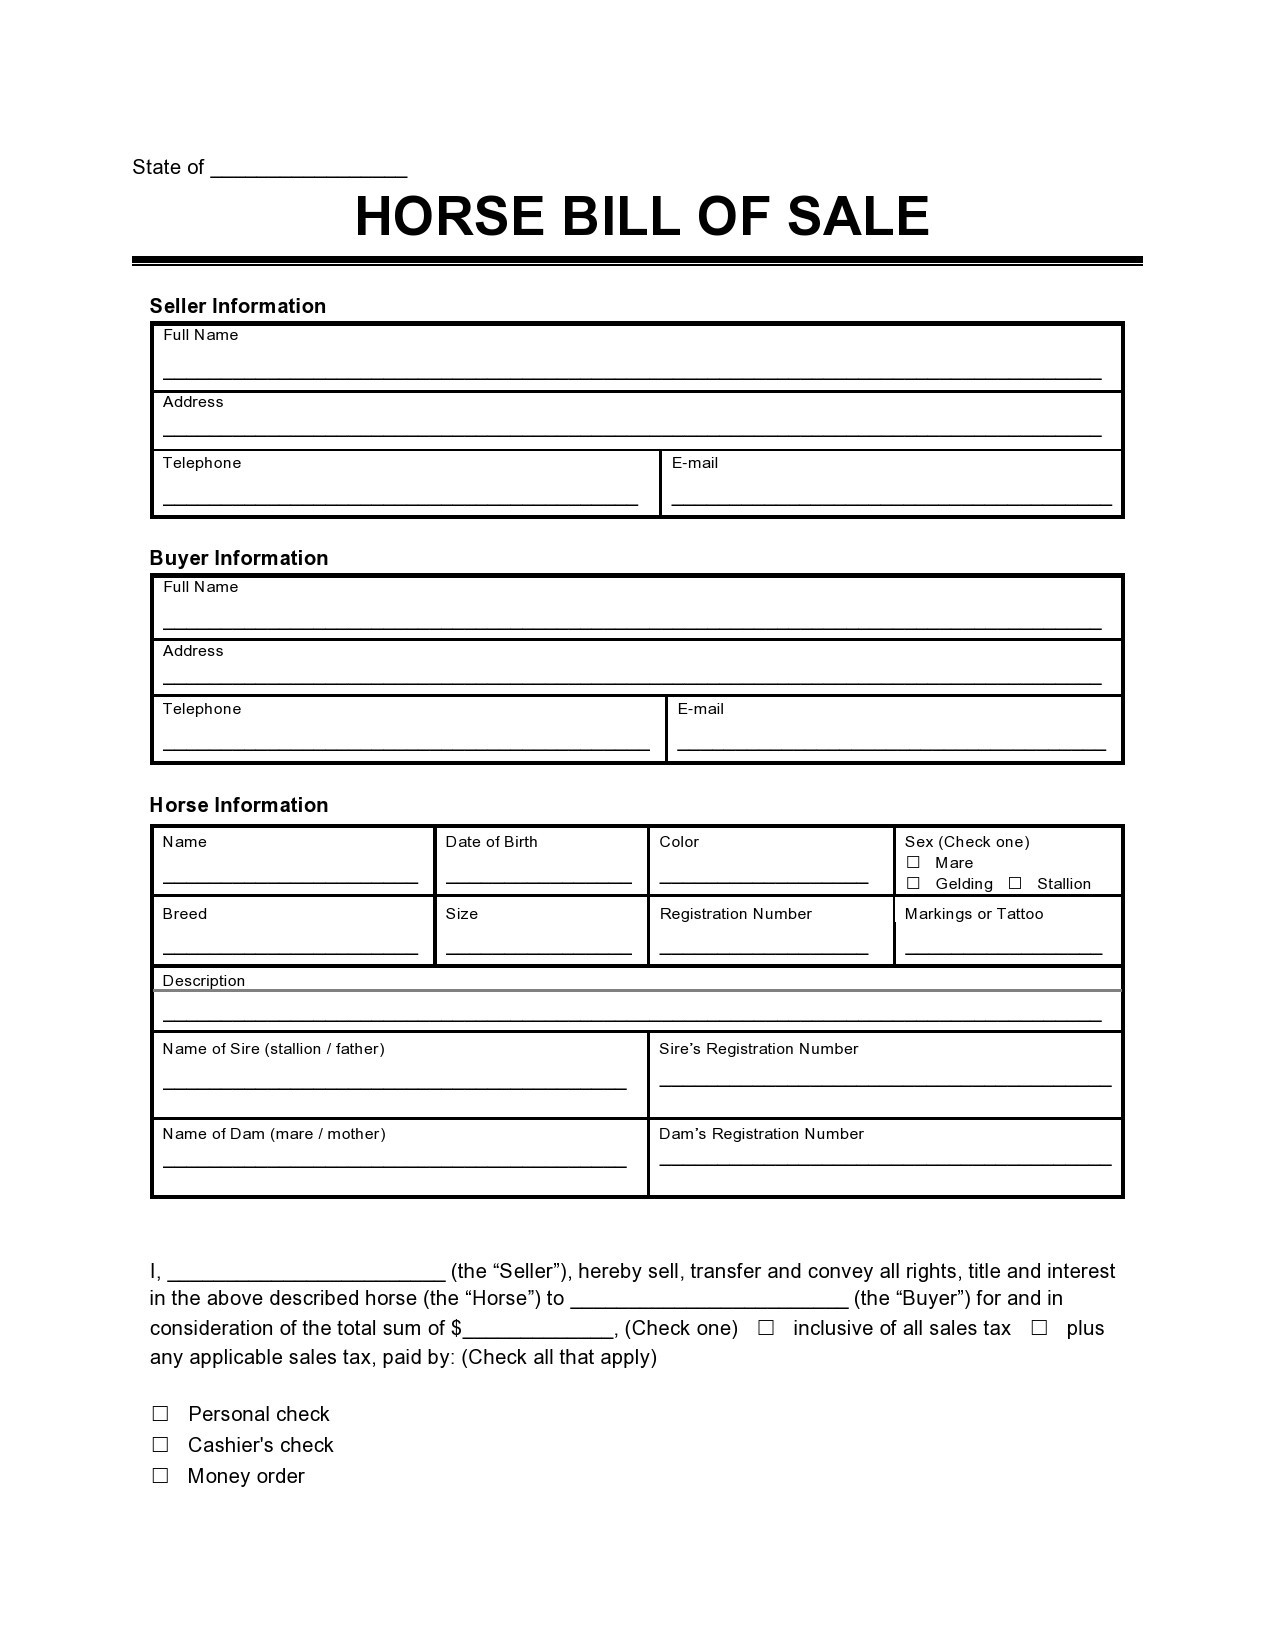 Factura de venta de caballo gratis 04